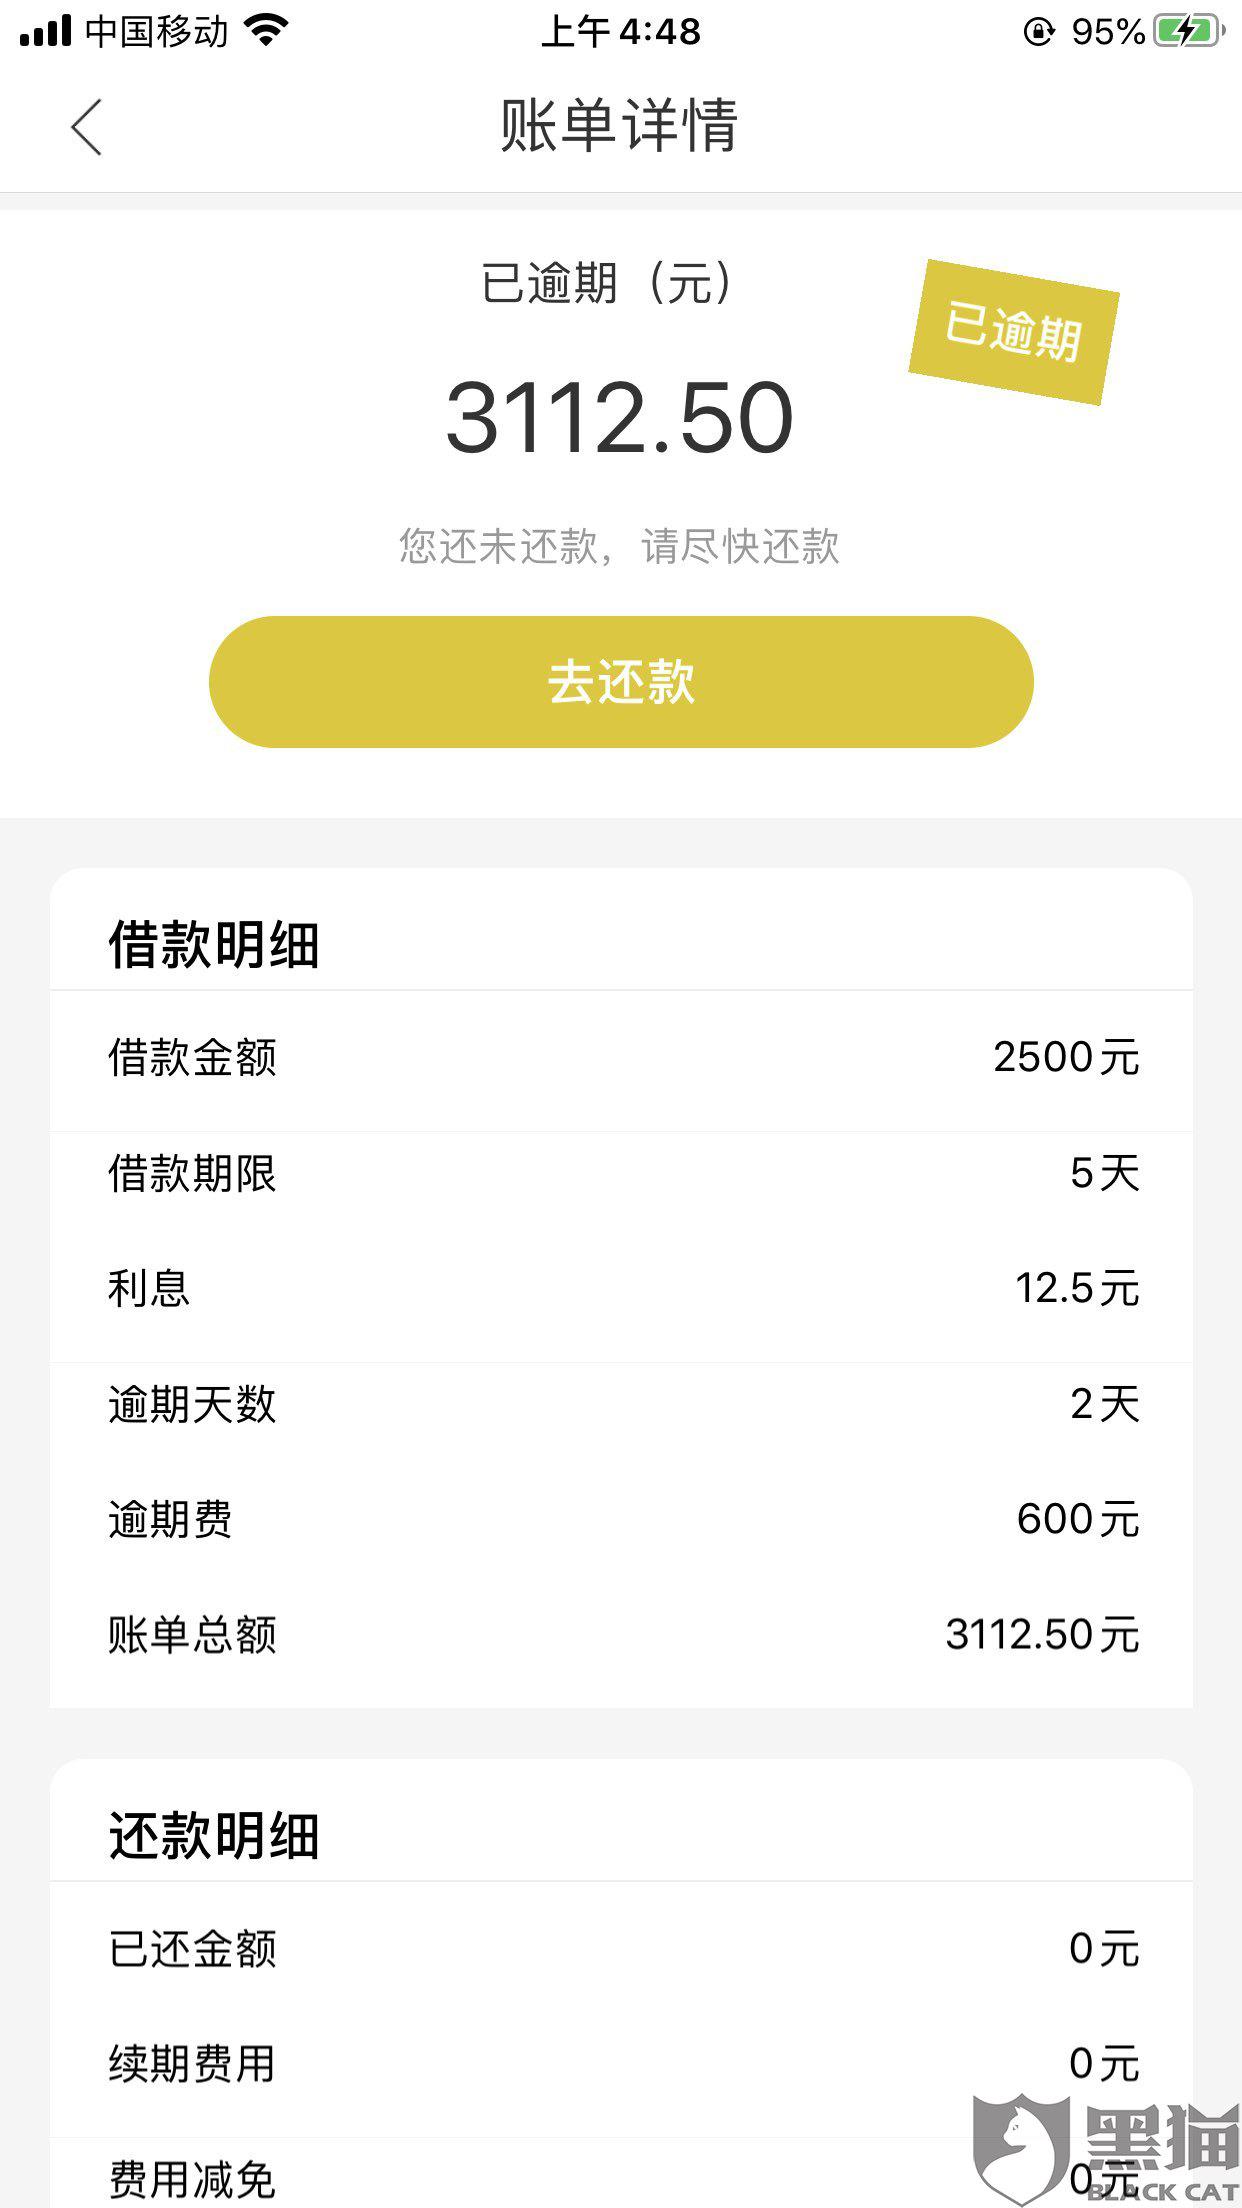 黑猫投诉:借款2500元,此金豆豆app只通过郑雄威转账到我建设银行1375